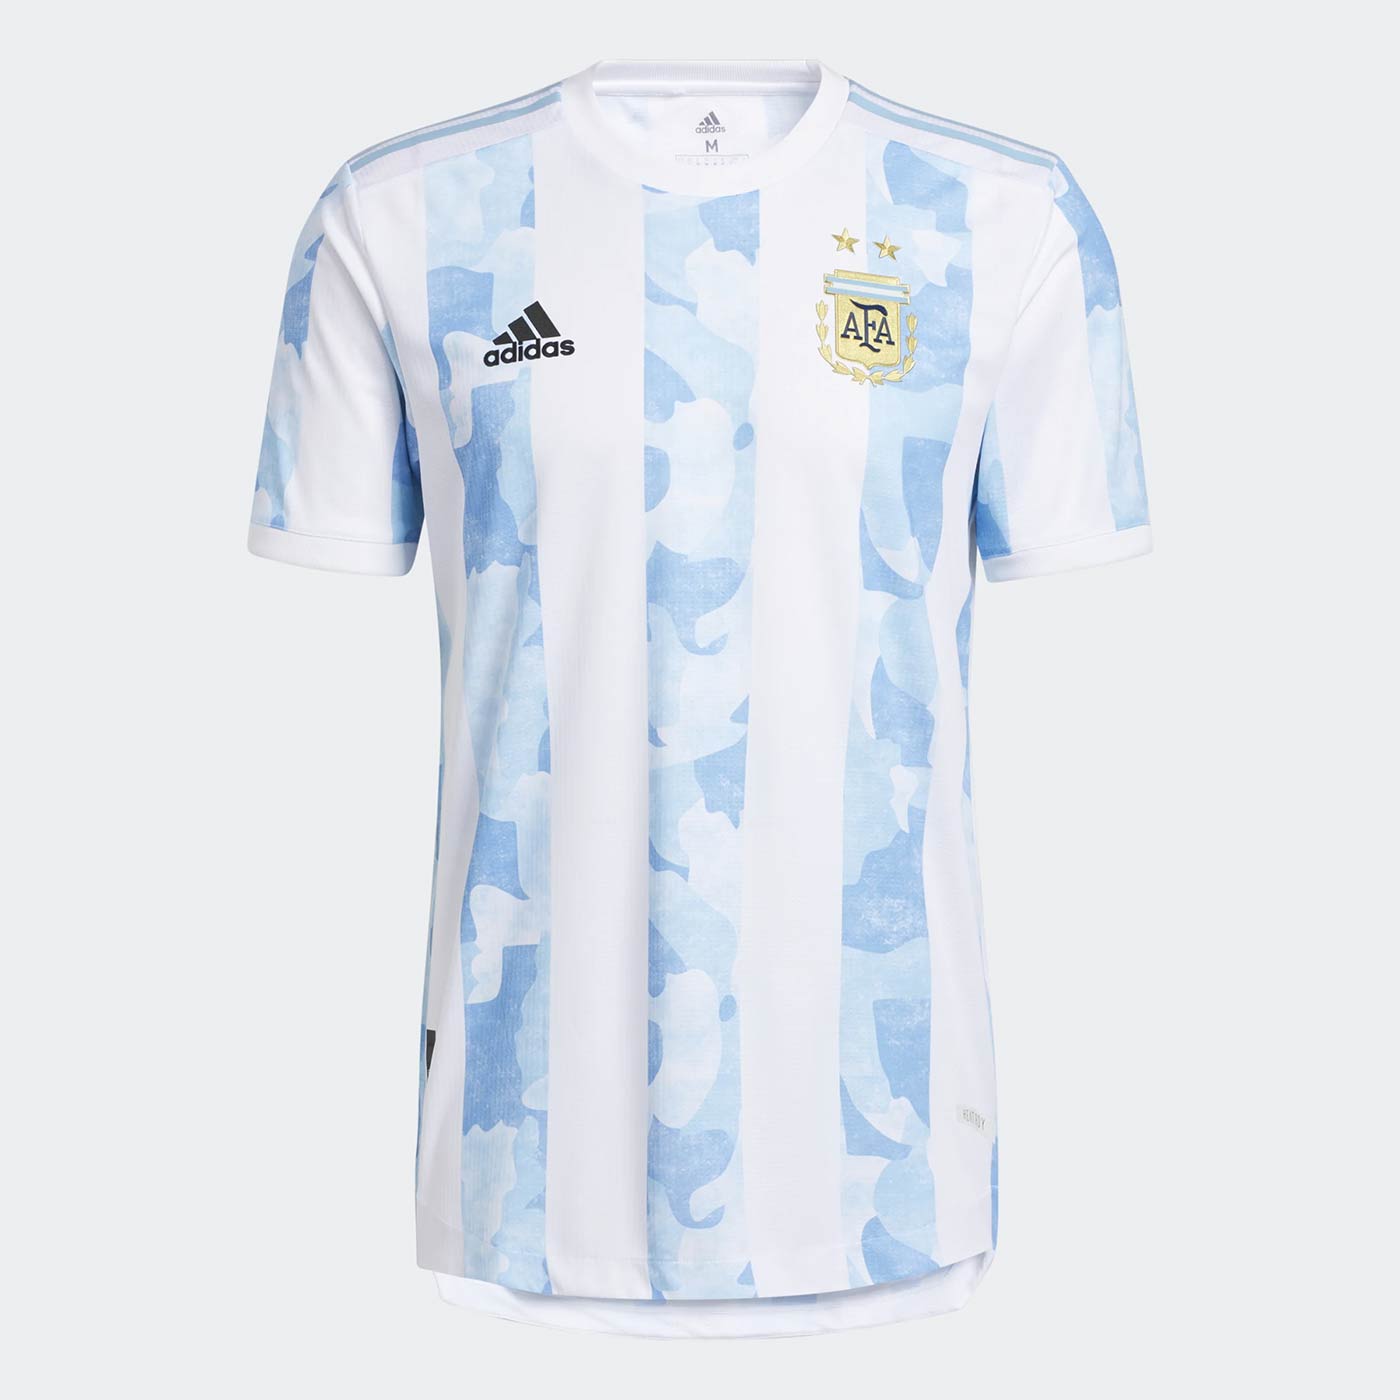 Maglia Argentina Copa America 2021 con le strisce camouflage!